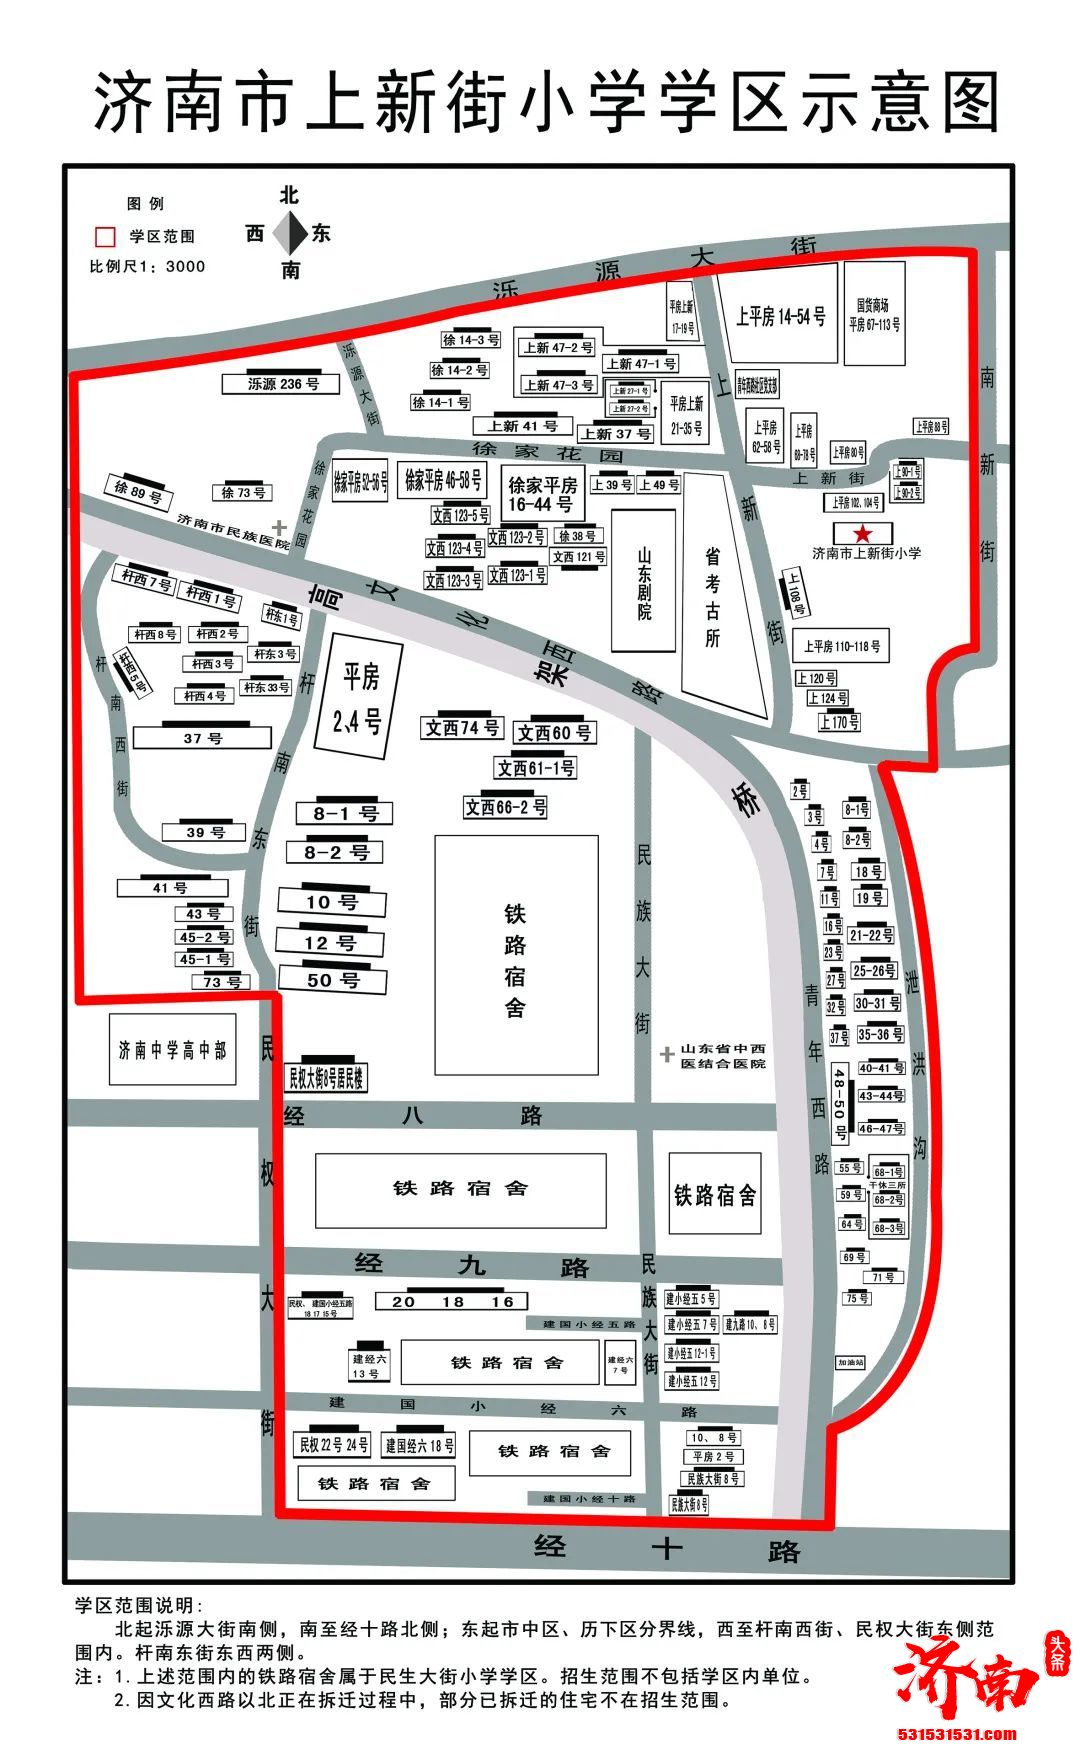 干货请收藏！2022年济南市市中区小学及学区范围示意图来了